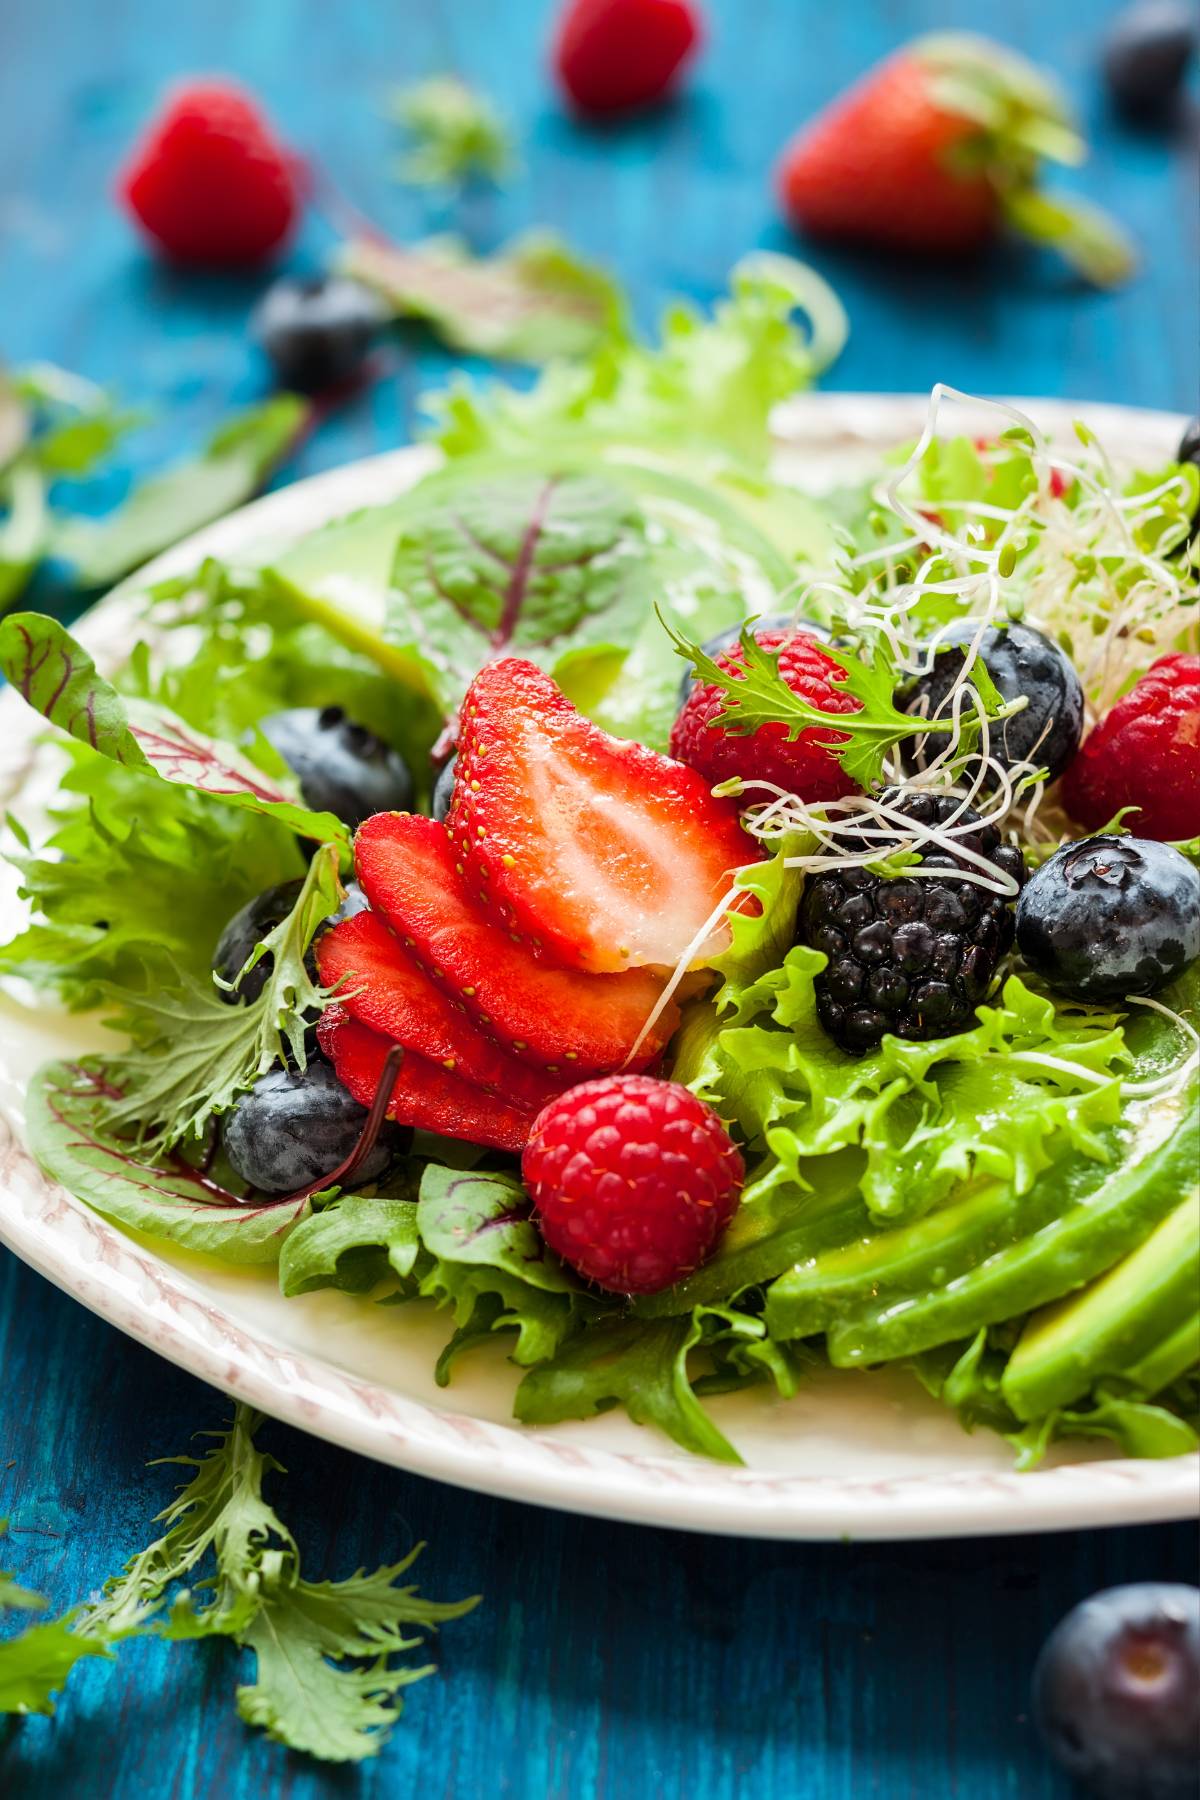 Easy Salad Recipes: Top 10